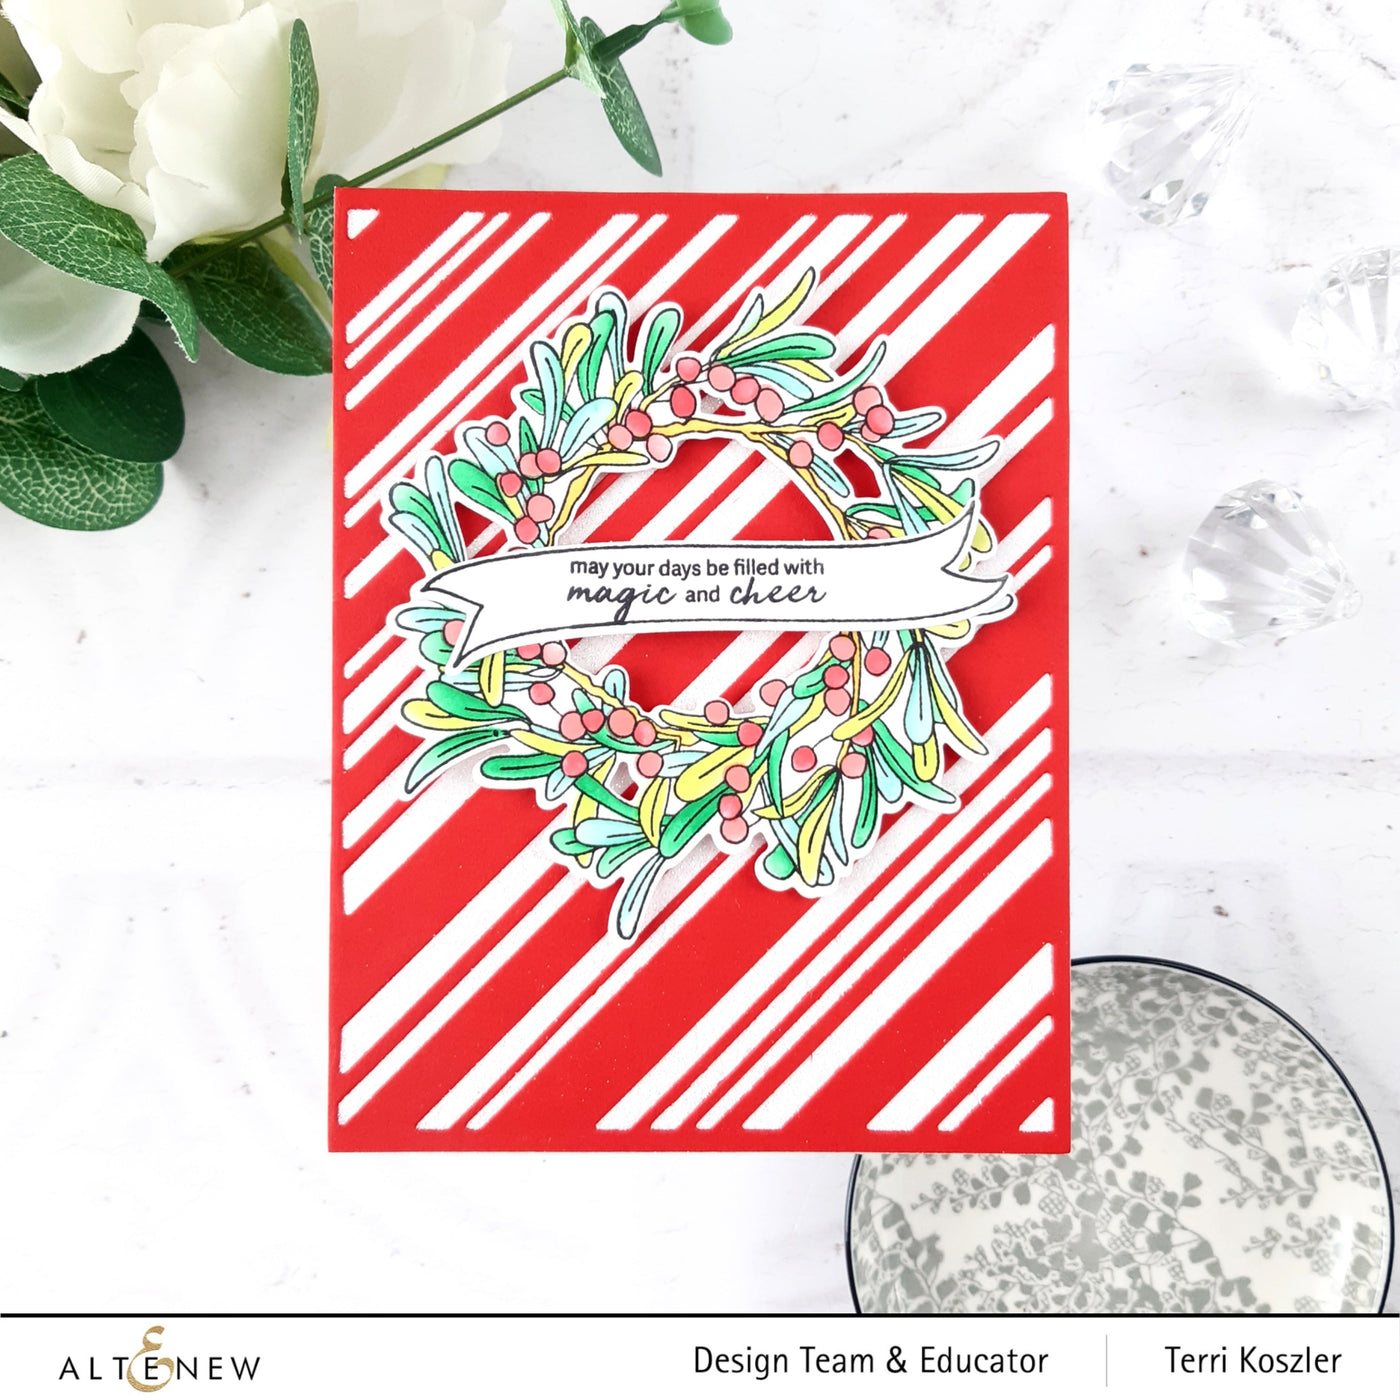 Stamp & Die & Stencil & Embossing Folder Bundle Mistletoe Wreath